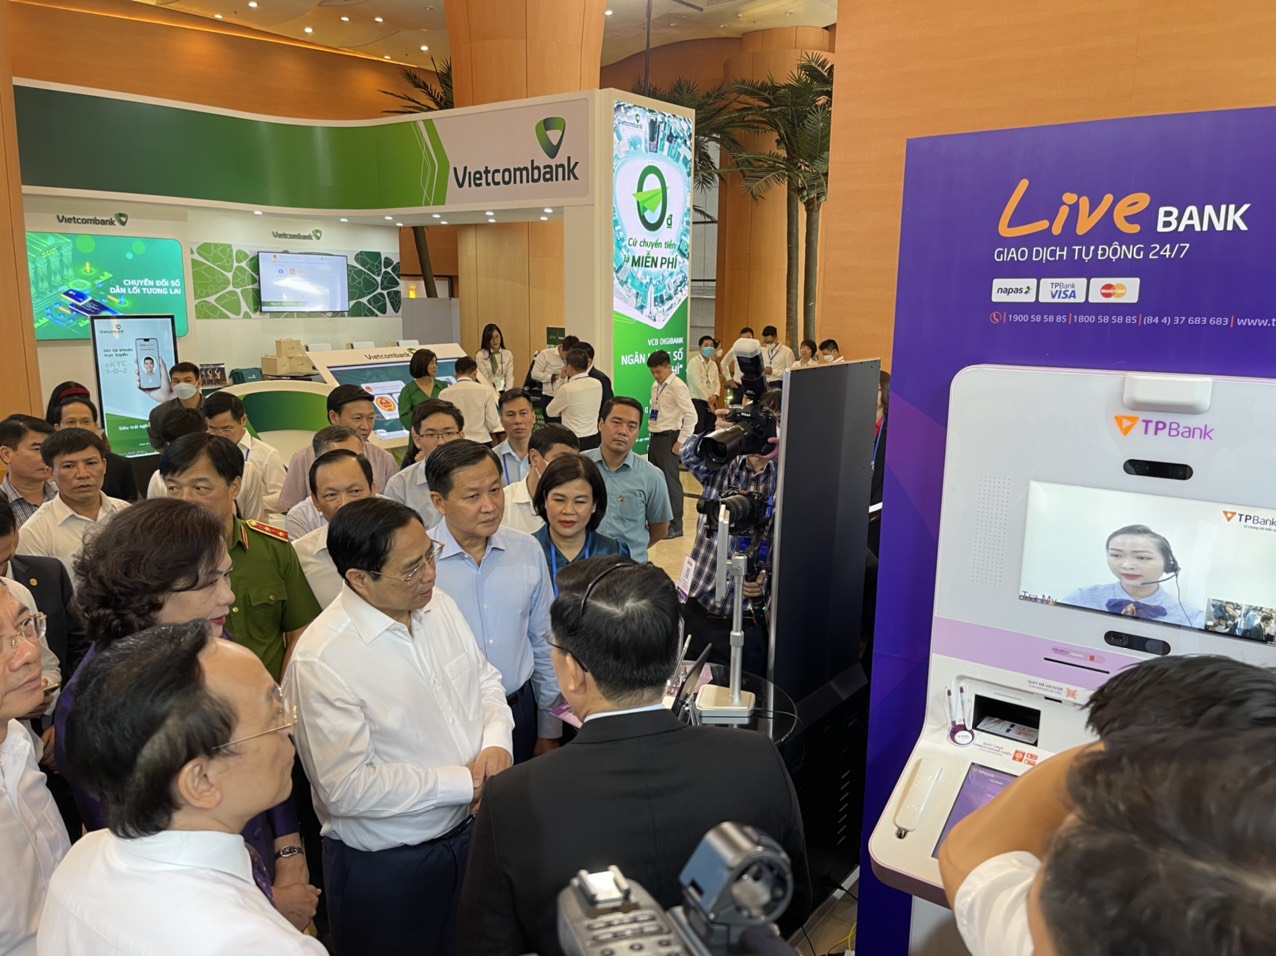 Thủ tướng Chính phủ trải nghiệm LiveBank,Voice pay của TPBank tại sự kiện số ngành Ngân hàng - Ảnh 2.